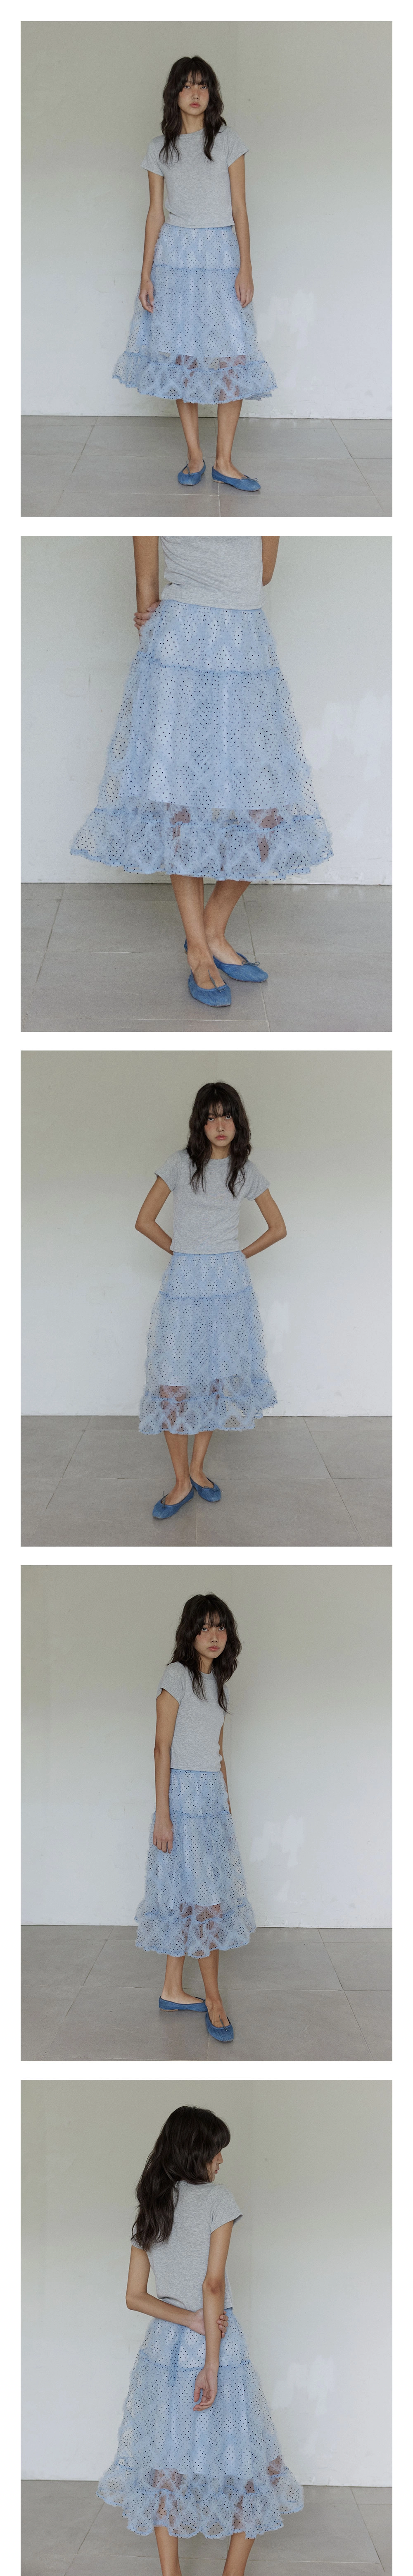 Polka dot frill skirt / Blue